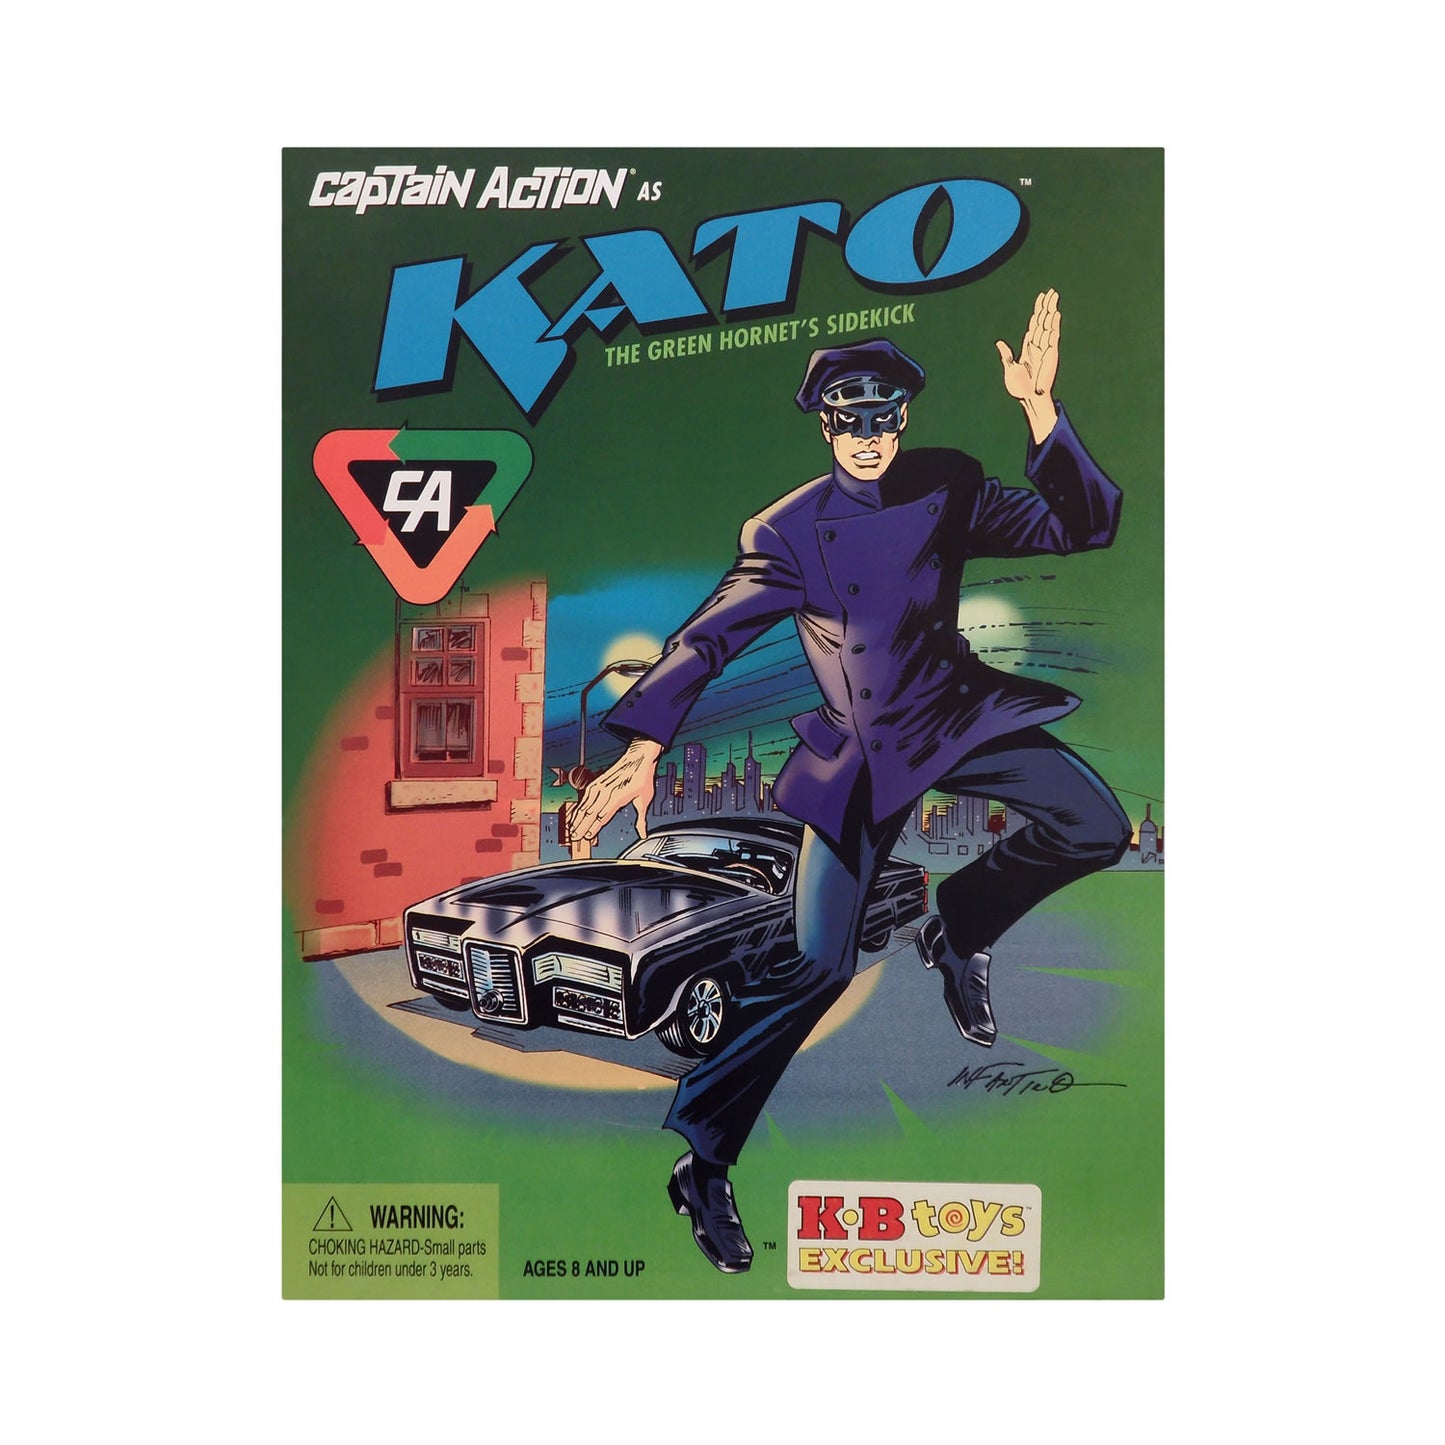 Captain Action as Kato the Green Hornet's Sidekick